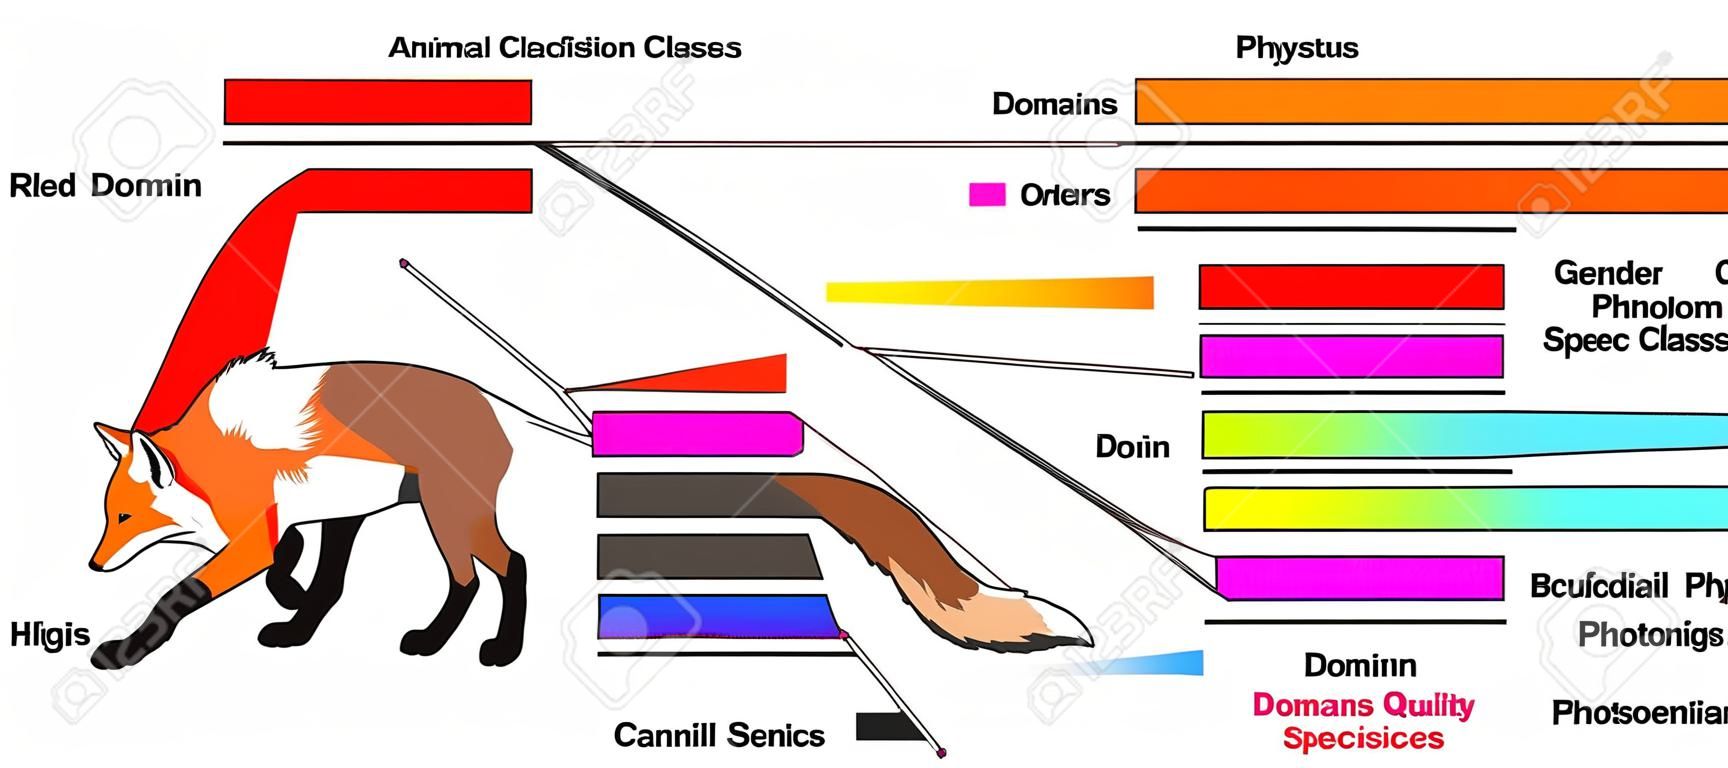 생물학 및 형태학 과학 교육을 위한 붉은 여우 도메인 왕국 문 클래스 주문 가족 속 및 종을 보여주는 동물 분류 인포그래픽 다이어그램의 예